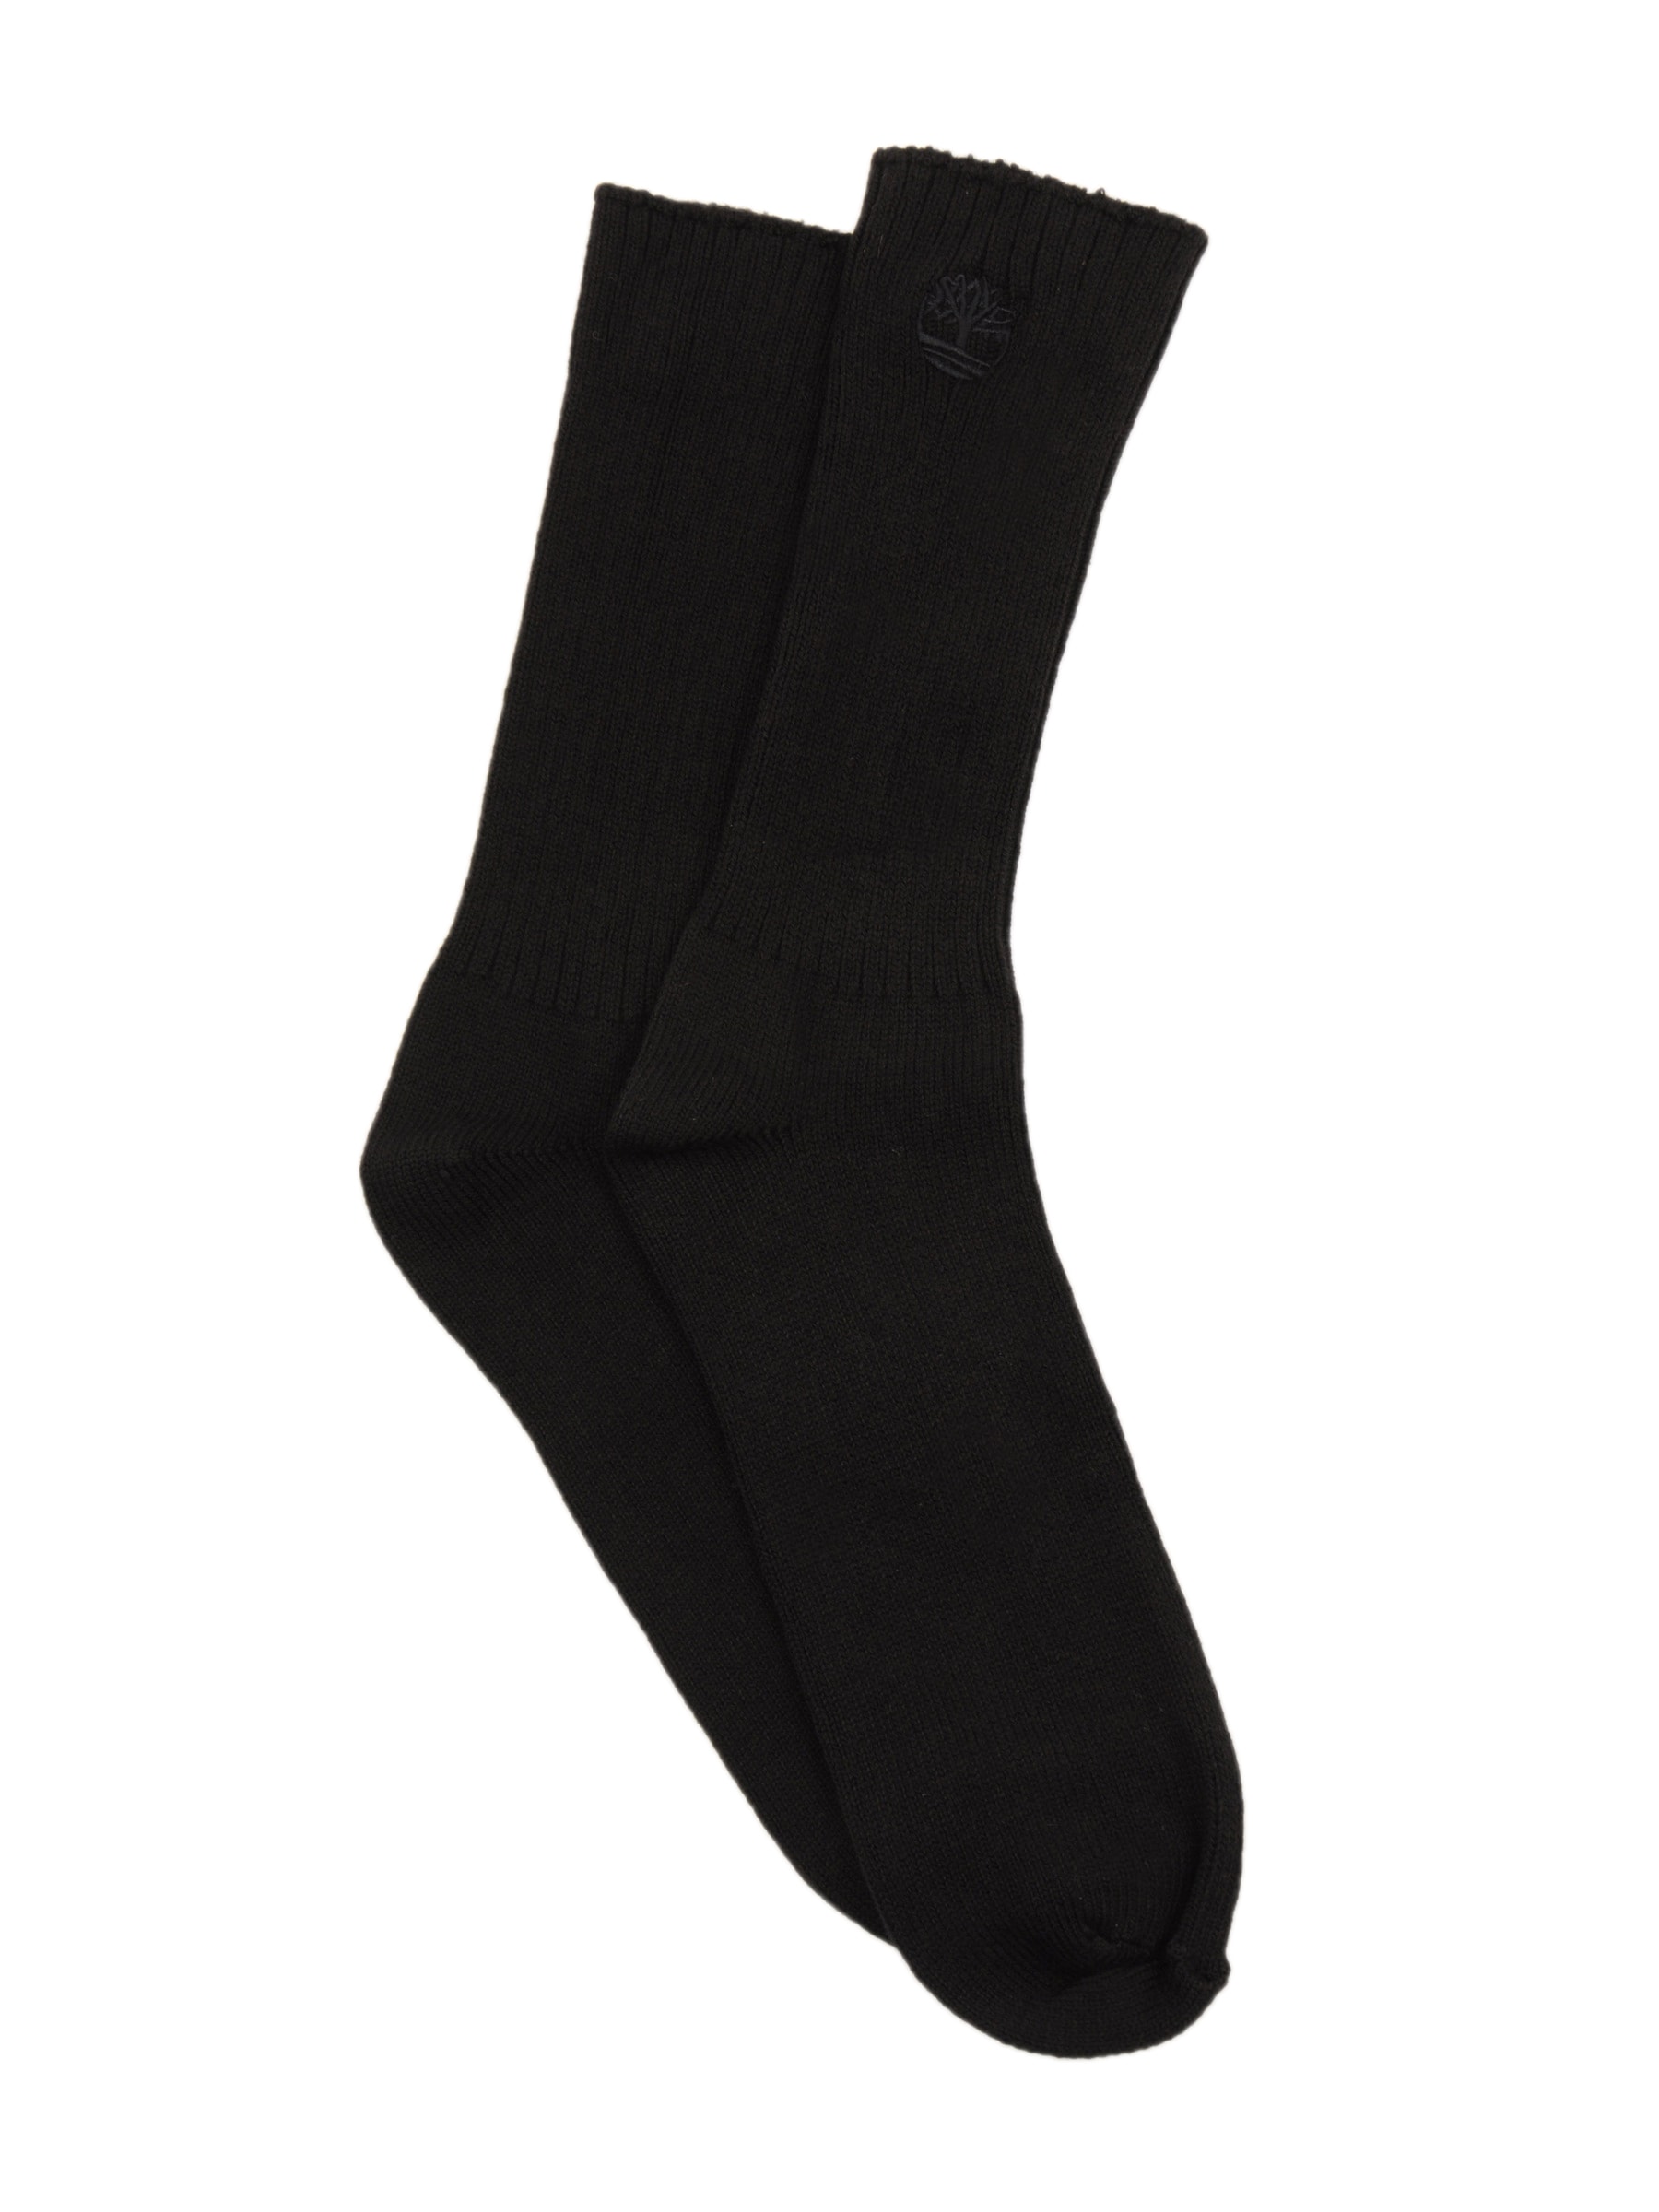 Timberland Men Casual Black Socks